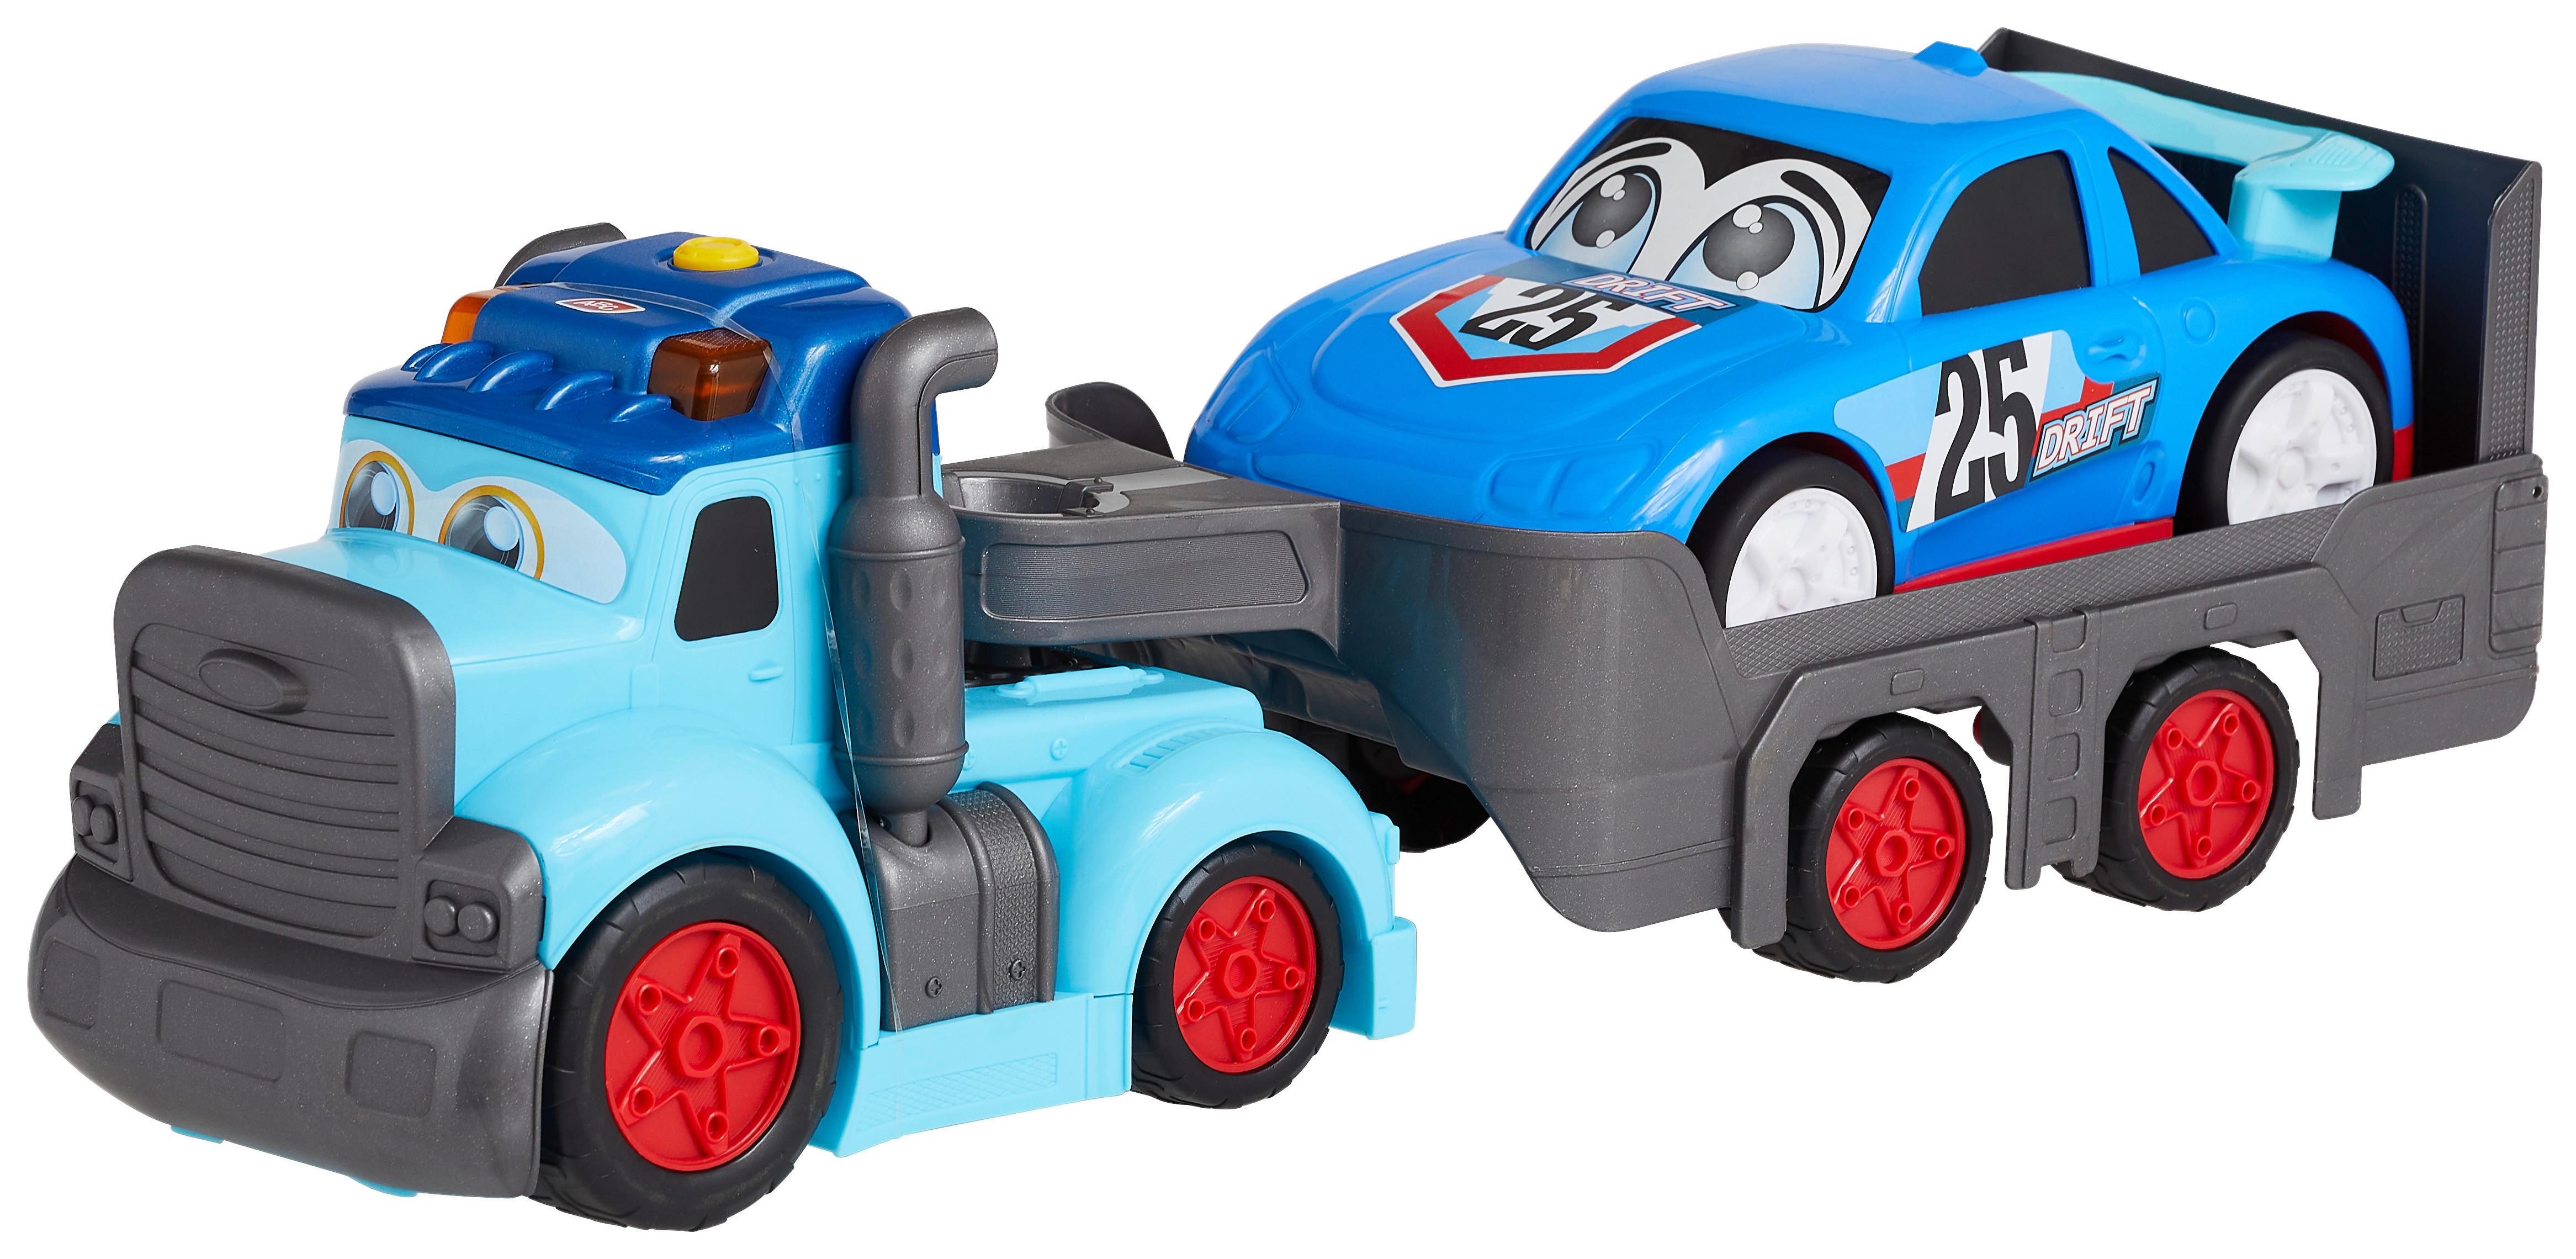 Kinder Spielzeugauto mit 12 Rennautos Spielzeug XXXL Transporter De Lieferung 